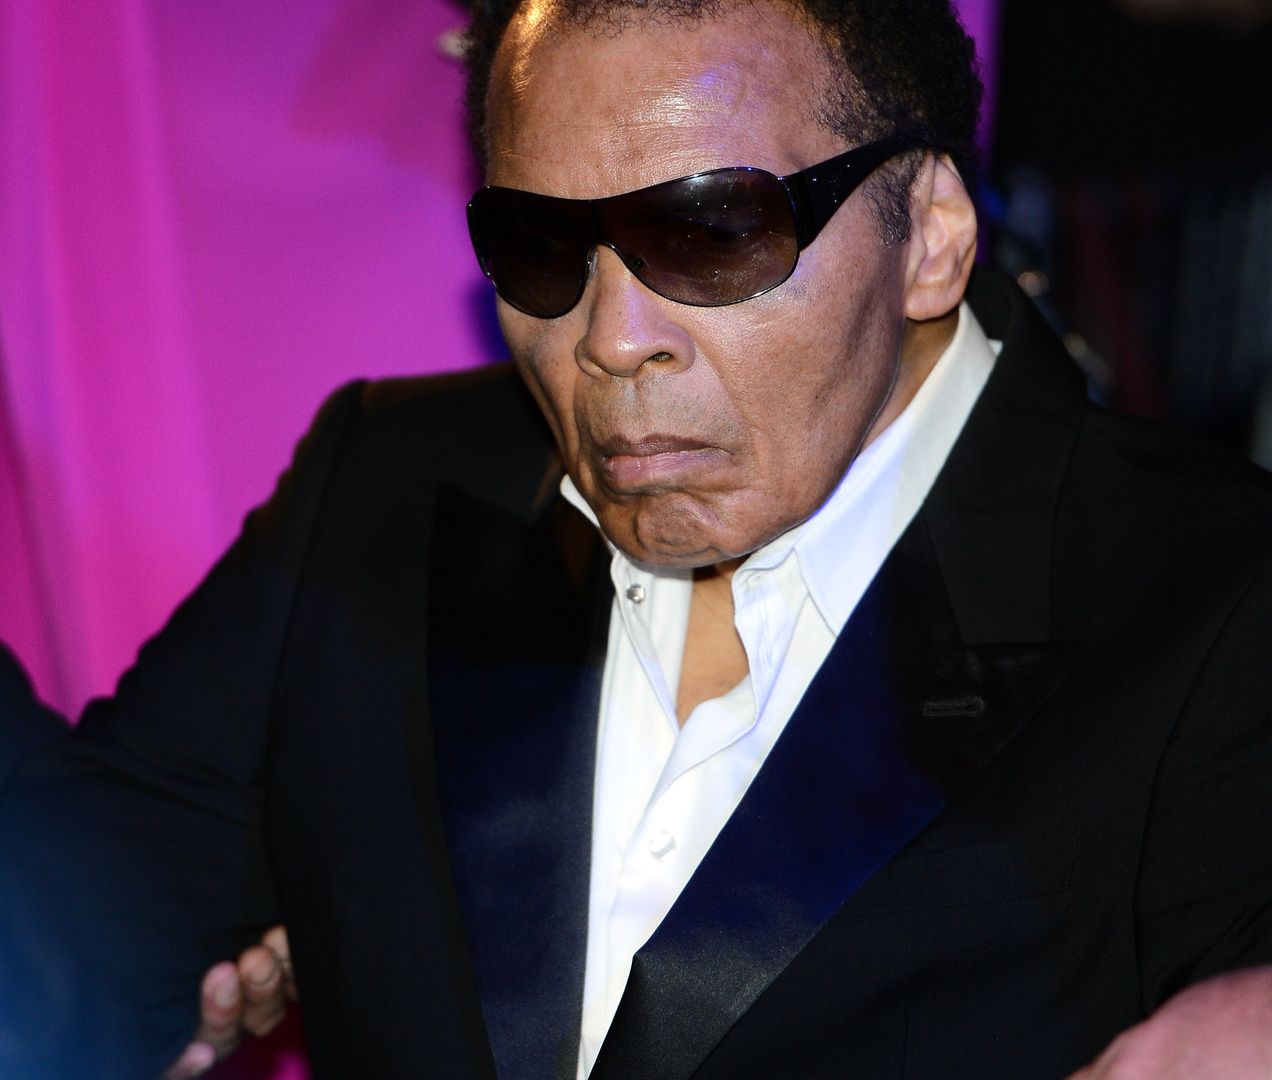 Legenda boksu w szpitalu. Muhammad Ali w ciężkim stanie